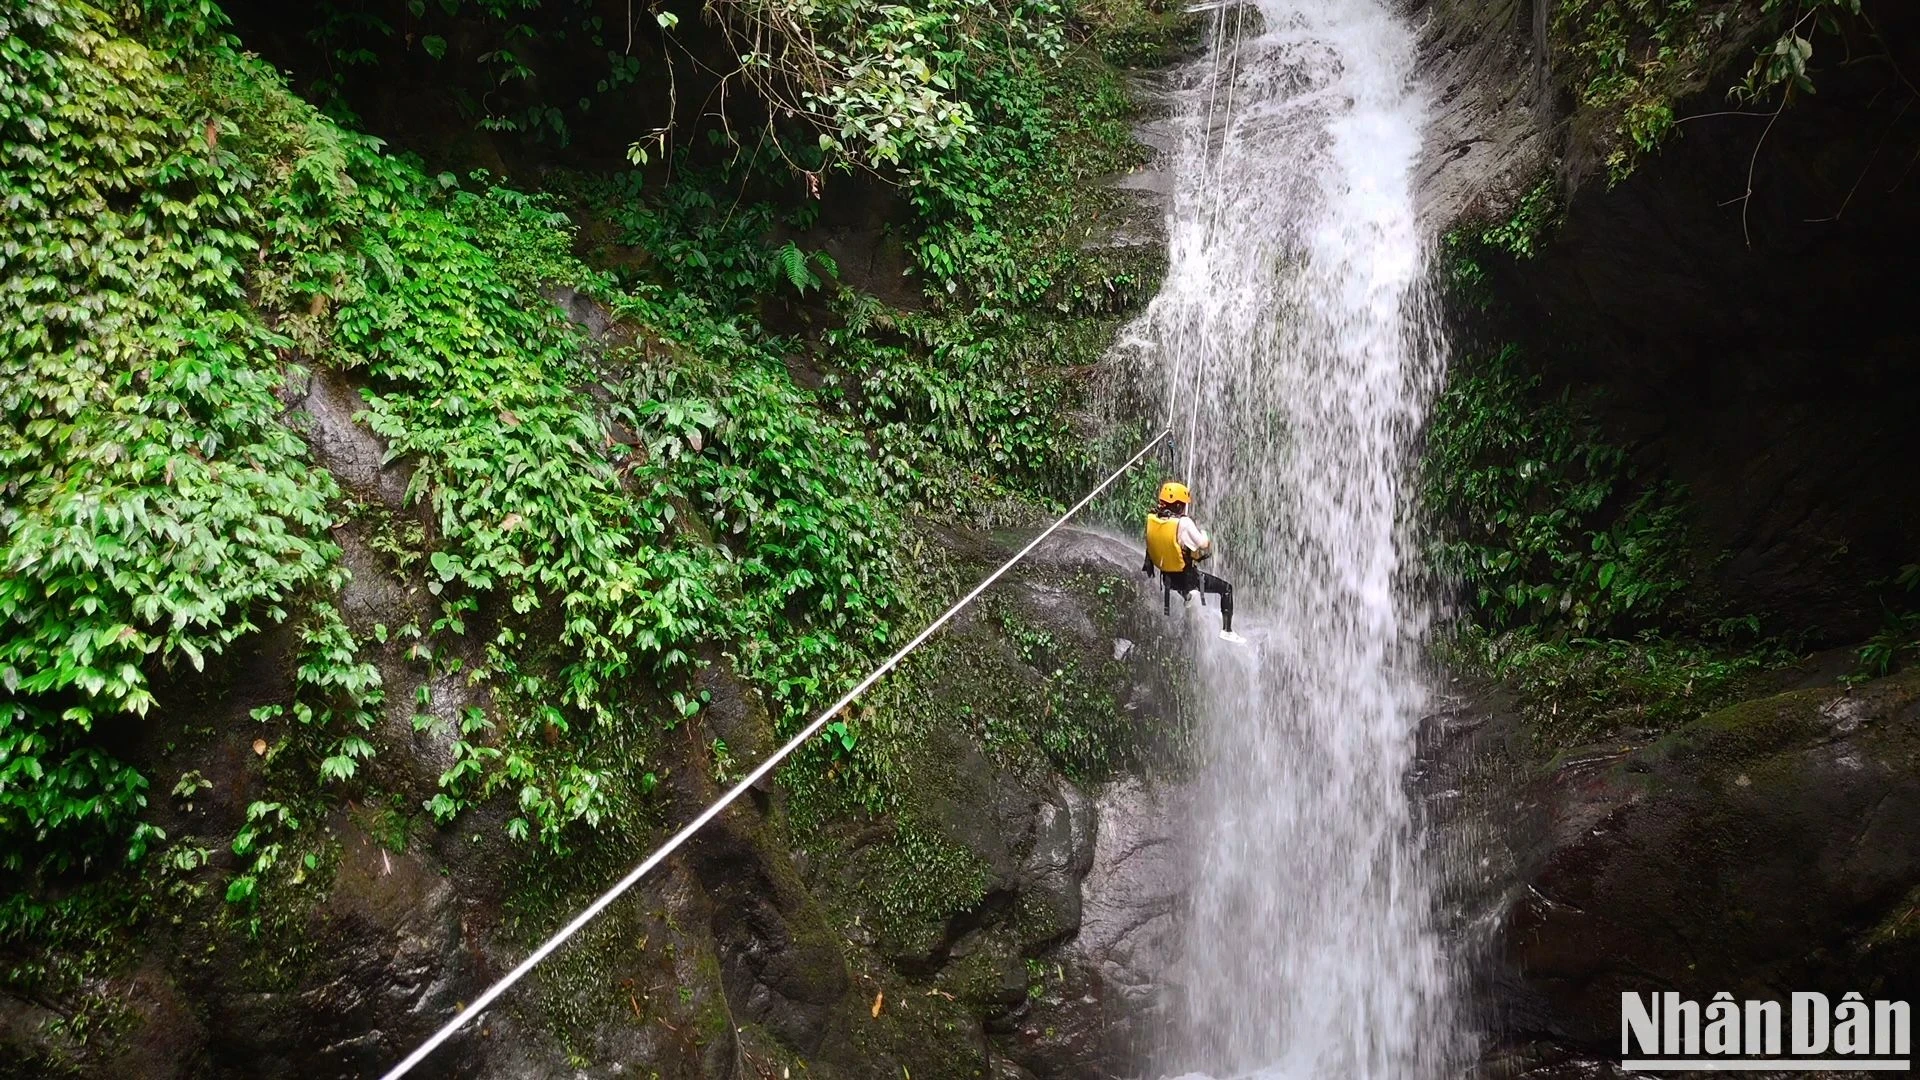 Chị Nguyễn Thị Hồng Nhung (34 tuổi, Thái Nguyên) cho biết đây là lần đầu tiên mình thử một tour du lịch mạo hiểm. Đối với những người mới làm quen, yếu tố quan trọng nhất là lựa chọn đơn vị uy tín và tham gia canyoning ở mức độ dễ để bảo đảm an toàn và trải nghiệm thú vị​.